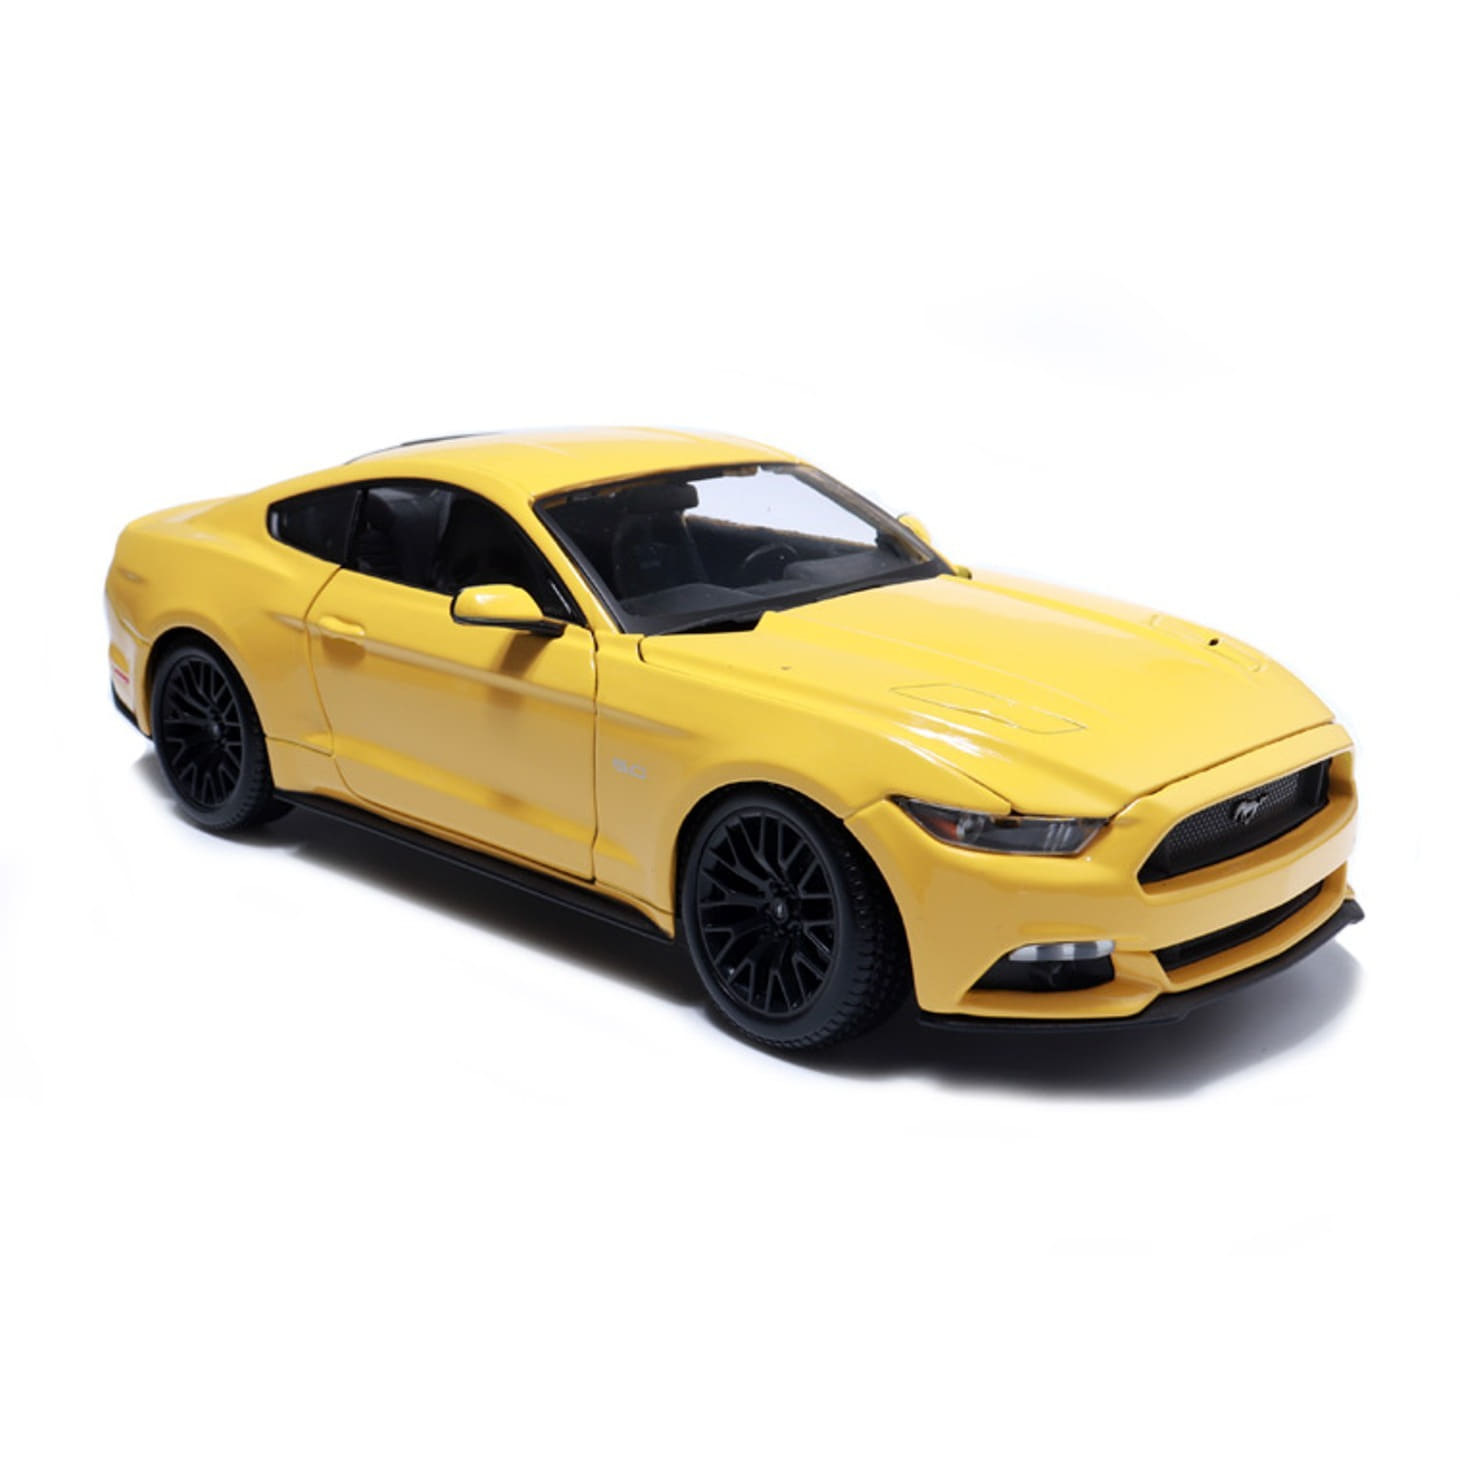 [마이스토] 1:18 포드 머스탱 GT 2015 옐로우 다이캐스트 모형차